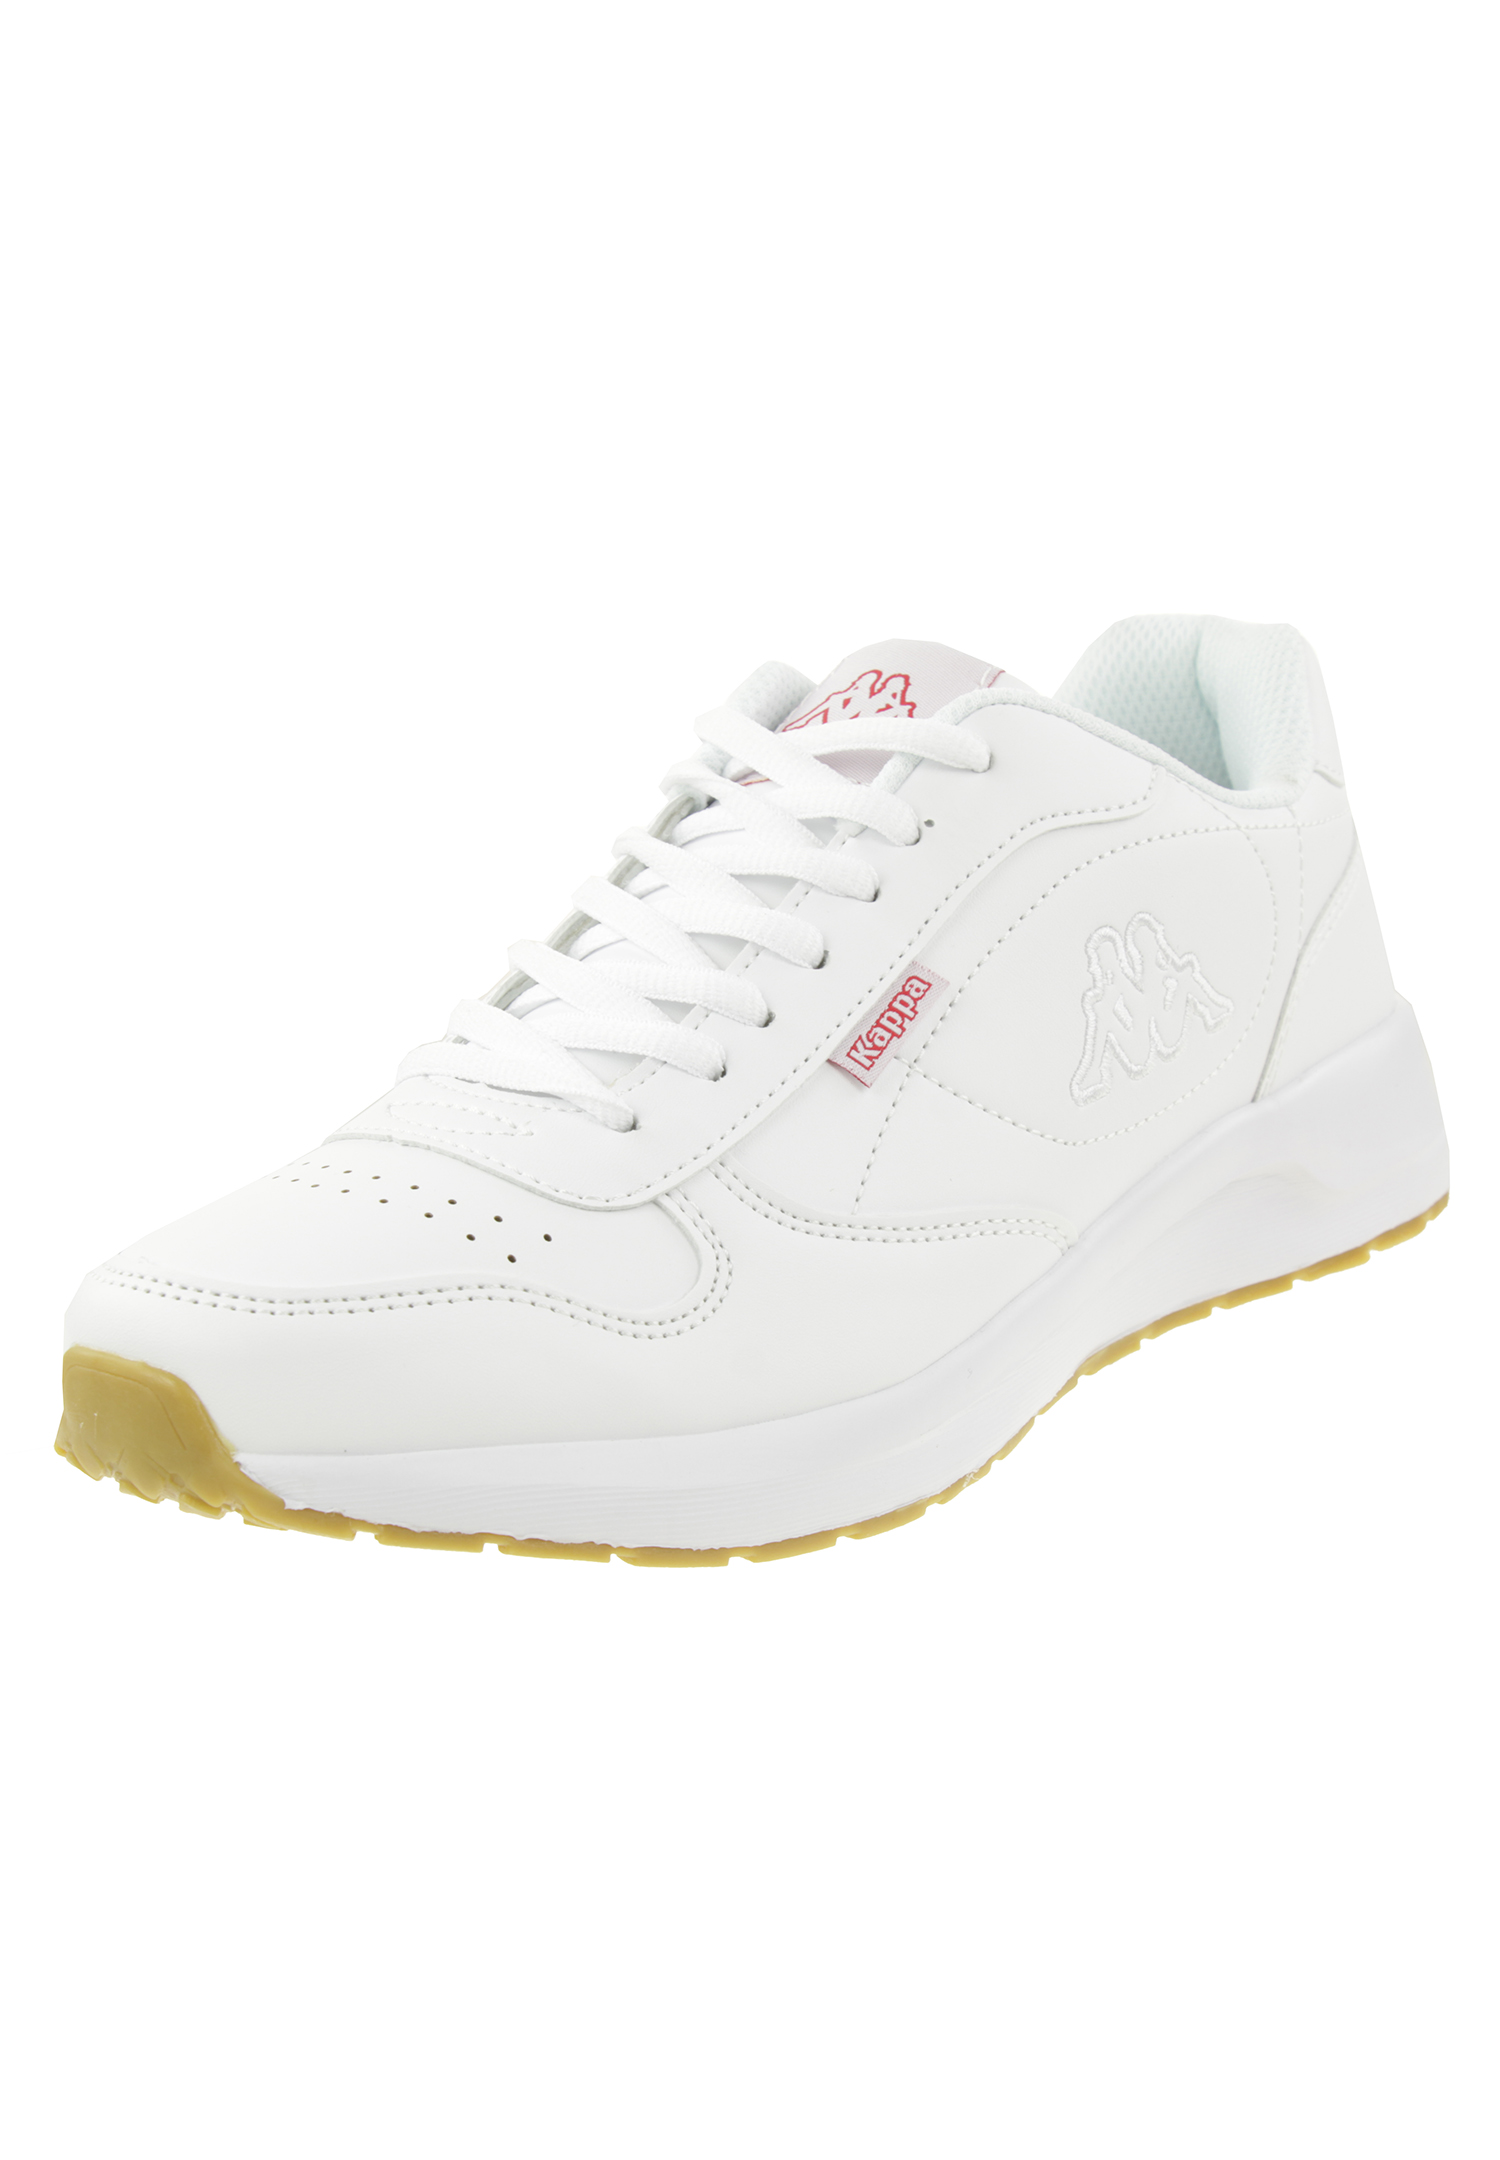 Kappa Unisex-Erwachsene Base II Sneaker, Weiß (White 1010), 36 EU